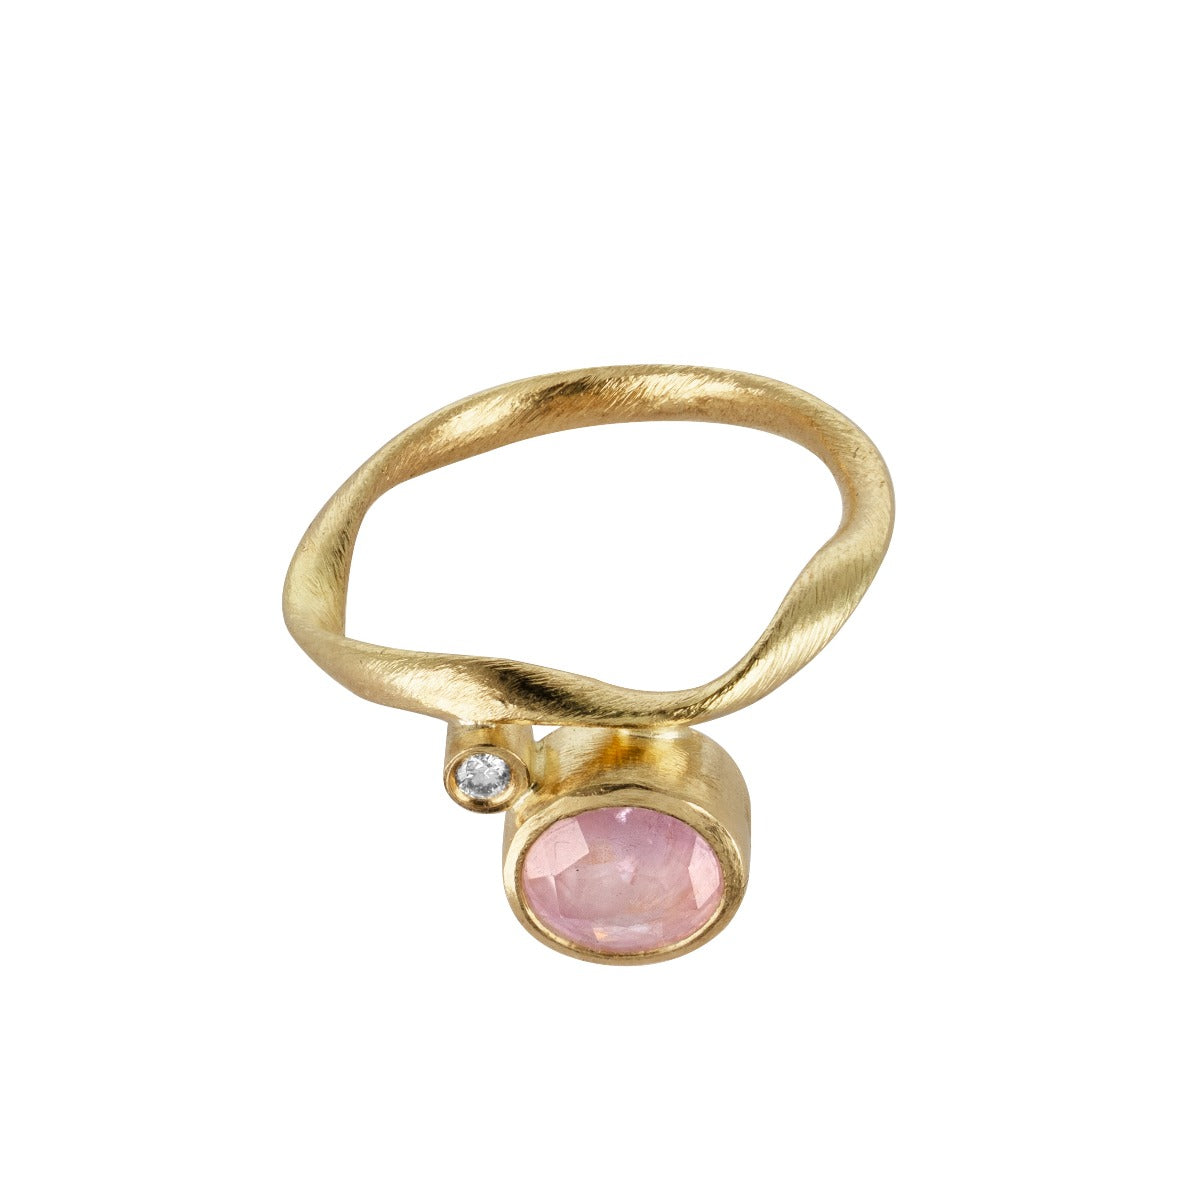 Flair ring i 18kt. med lyserød safir og lille diamant